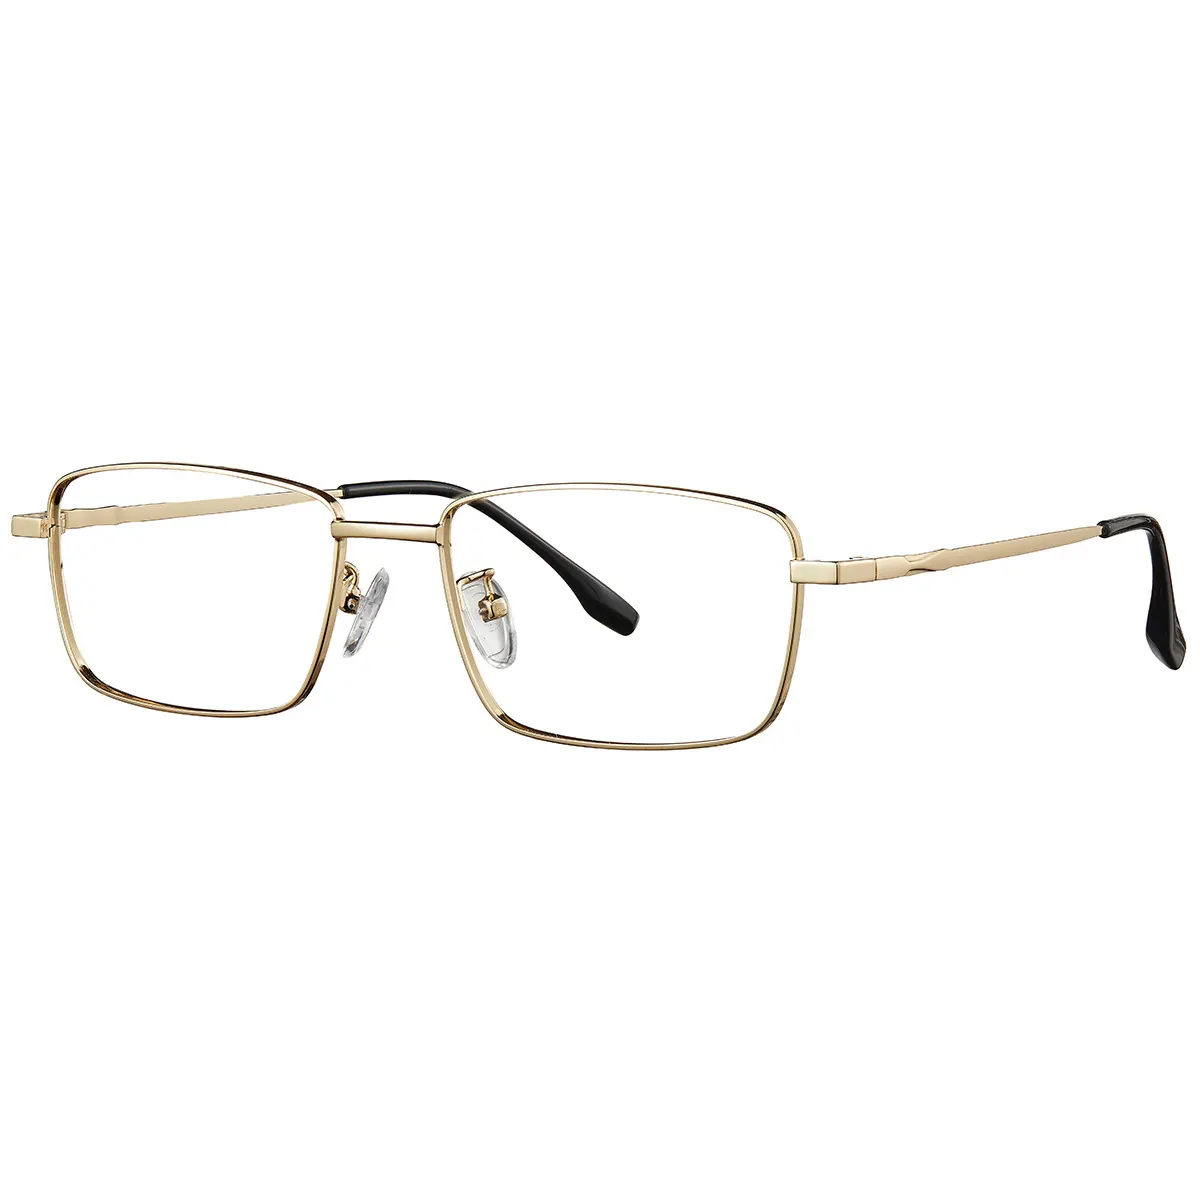 Bingkai optik stok persegi panjang logam pria wanita baru, bingkai kacamata baca murah, desain kacamata bingkai kacamata Retro